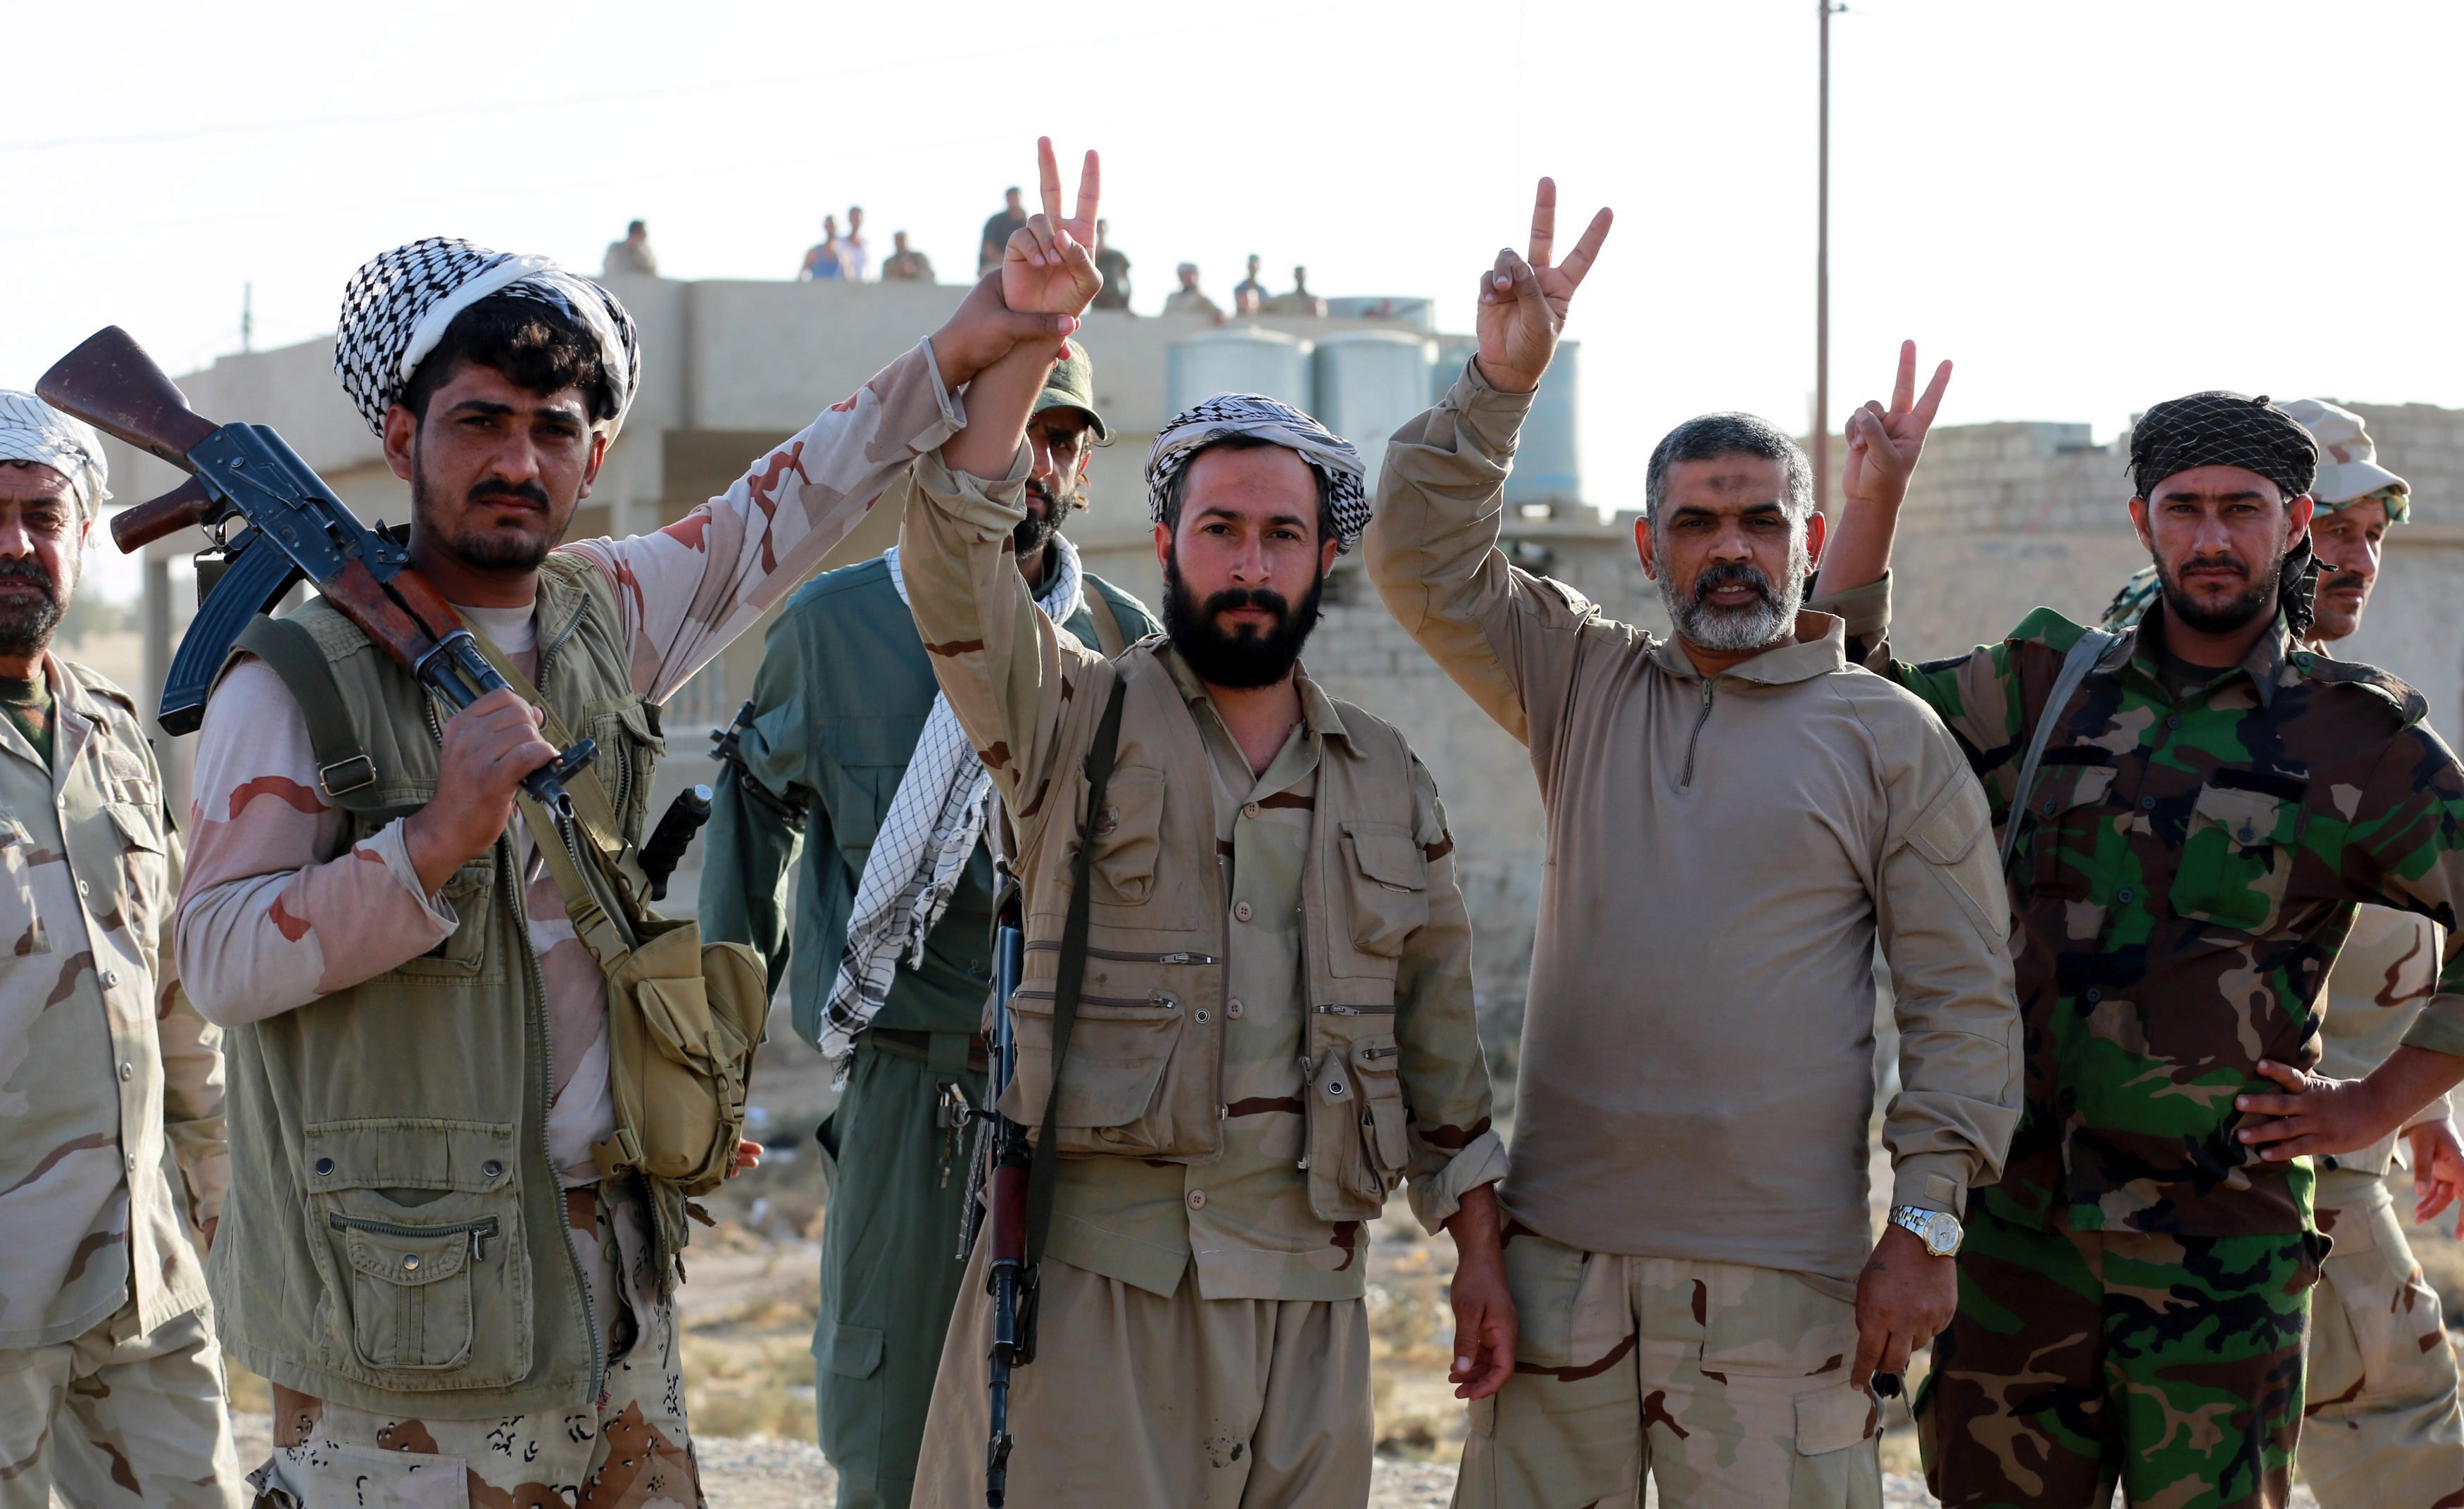 Zarka, 2016. november 1. Iraki síita fegyveresek a gyõzelem jelét mutatják az ostromgyûzûbe zárt észak-iraki Moszultól mintegy 20 kilométerre, nyugatra fekvõ és a napokban felszabadított Zarkában 2016. október 31-én. Az iraki kormányhadsereg és a vele szövetséges kurd erõk, továbbá szunnita törzsek és az Irán támogatta síita milíciák október 17-én kezdtek nagyszabású hadmûveletet Moszul és környéke visszafoglalására az Iszlám Állam dzsihadista szervezet fegyvereseitõl. (MTI/EPA/Ahmed Dzsalil)